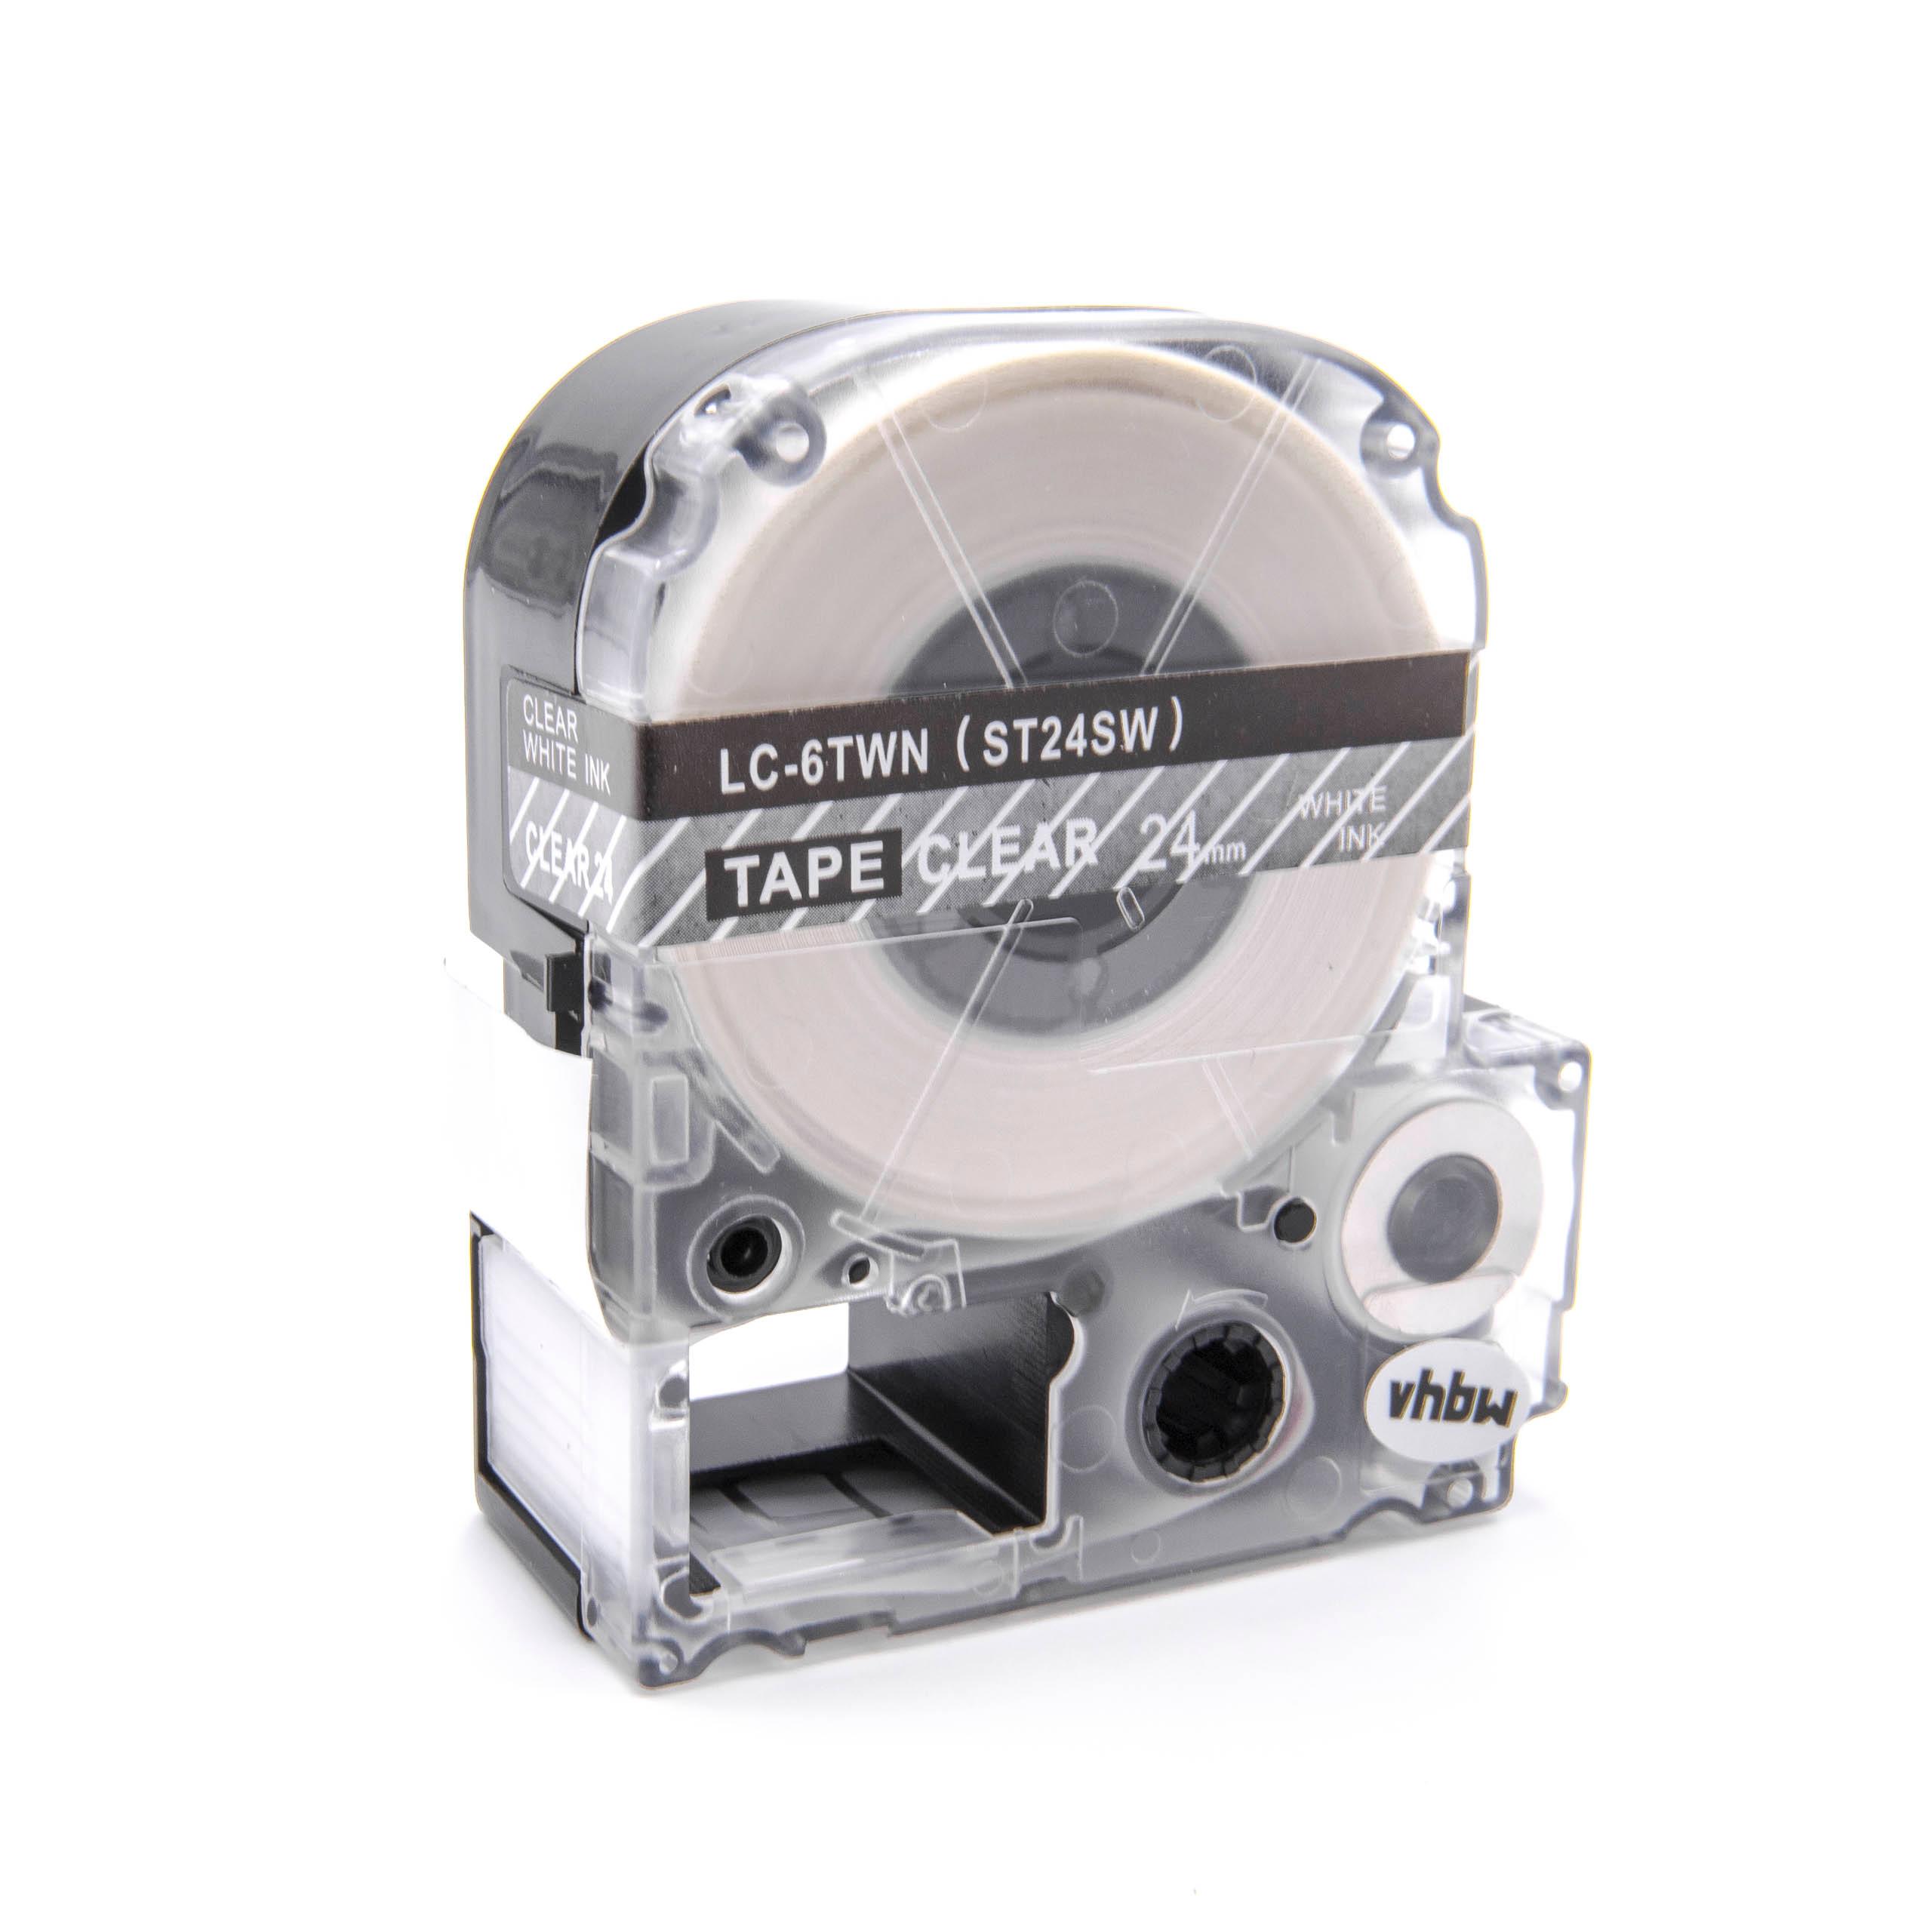 Cassetta nastro sostituisce Epson LC-6TWN per etichettatrice Epson 24mm bianco su trasparente